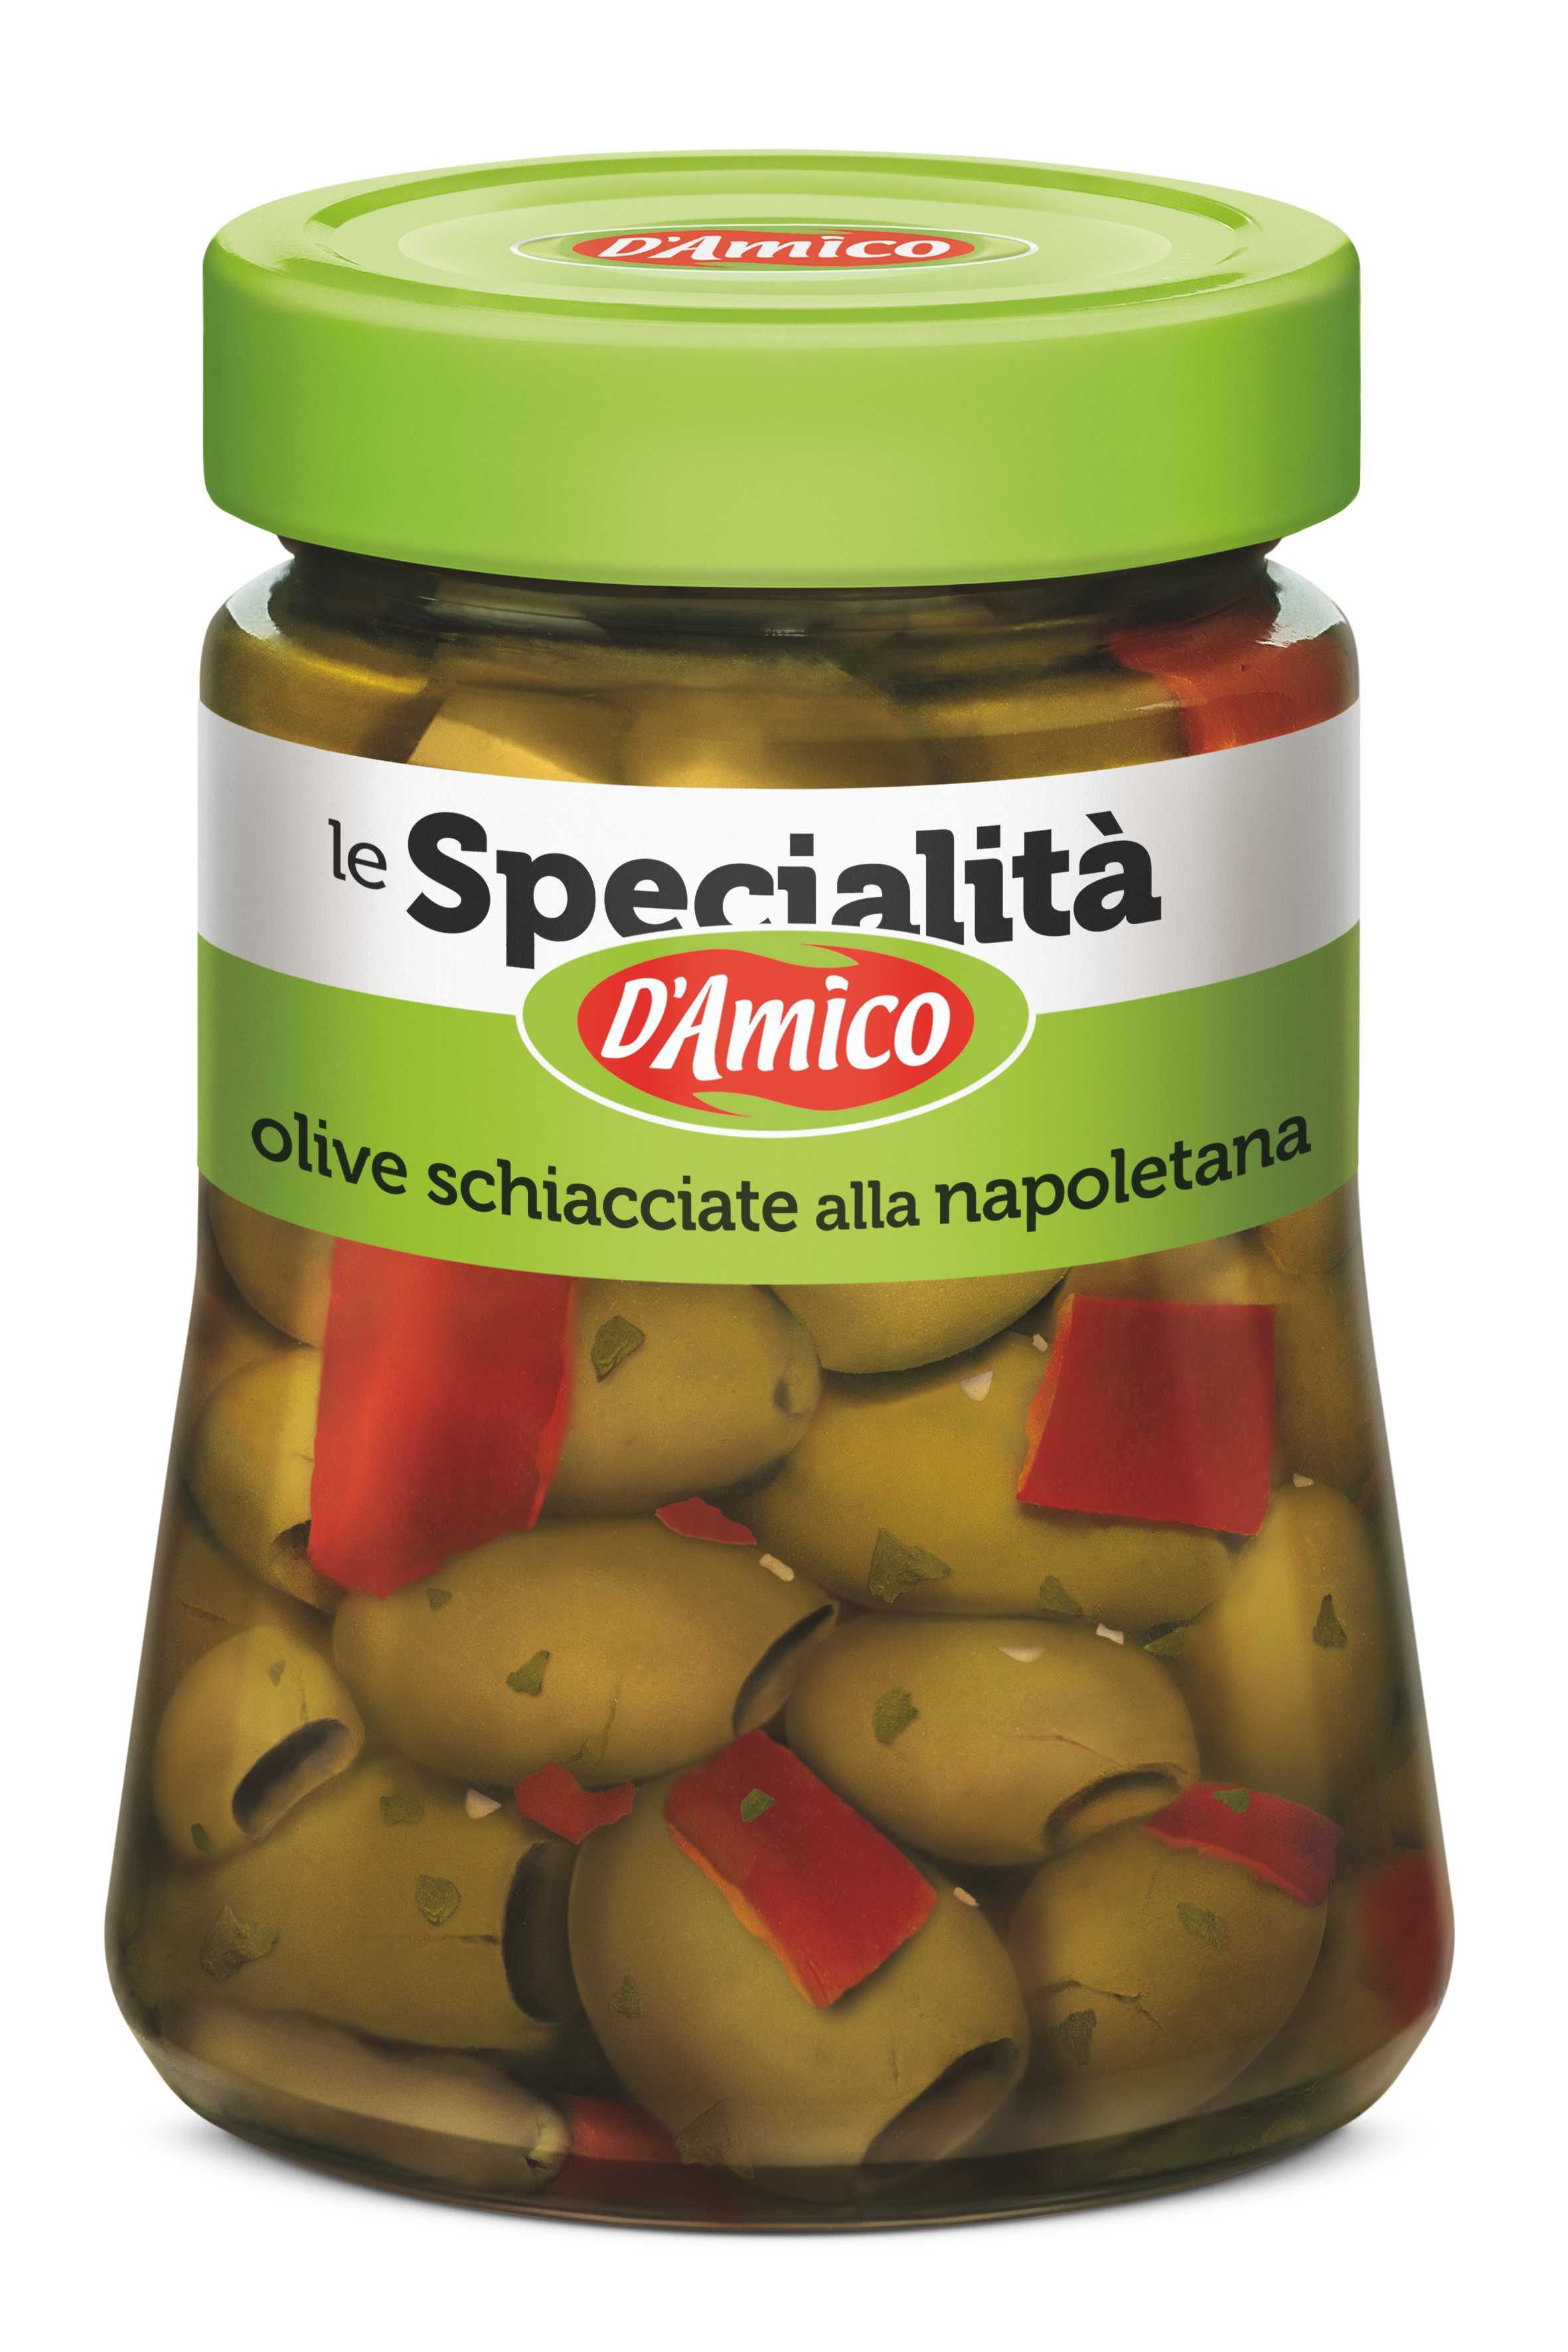 Olive schiacciate alla napoletana